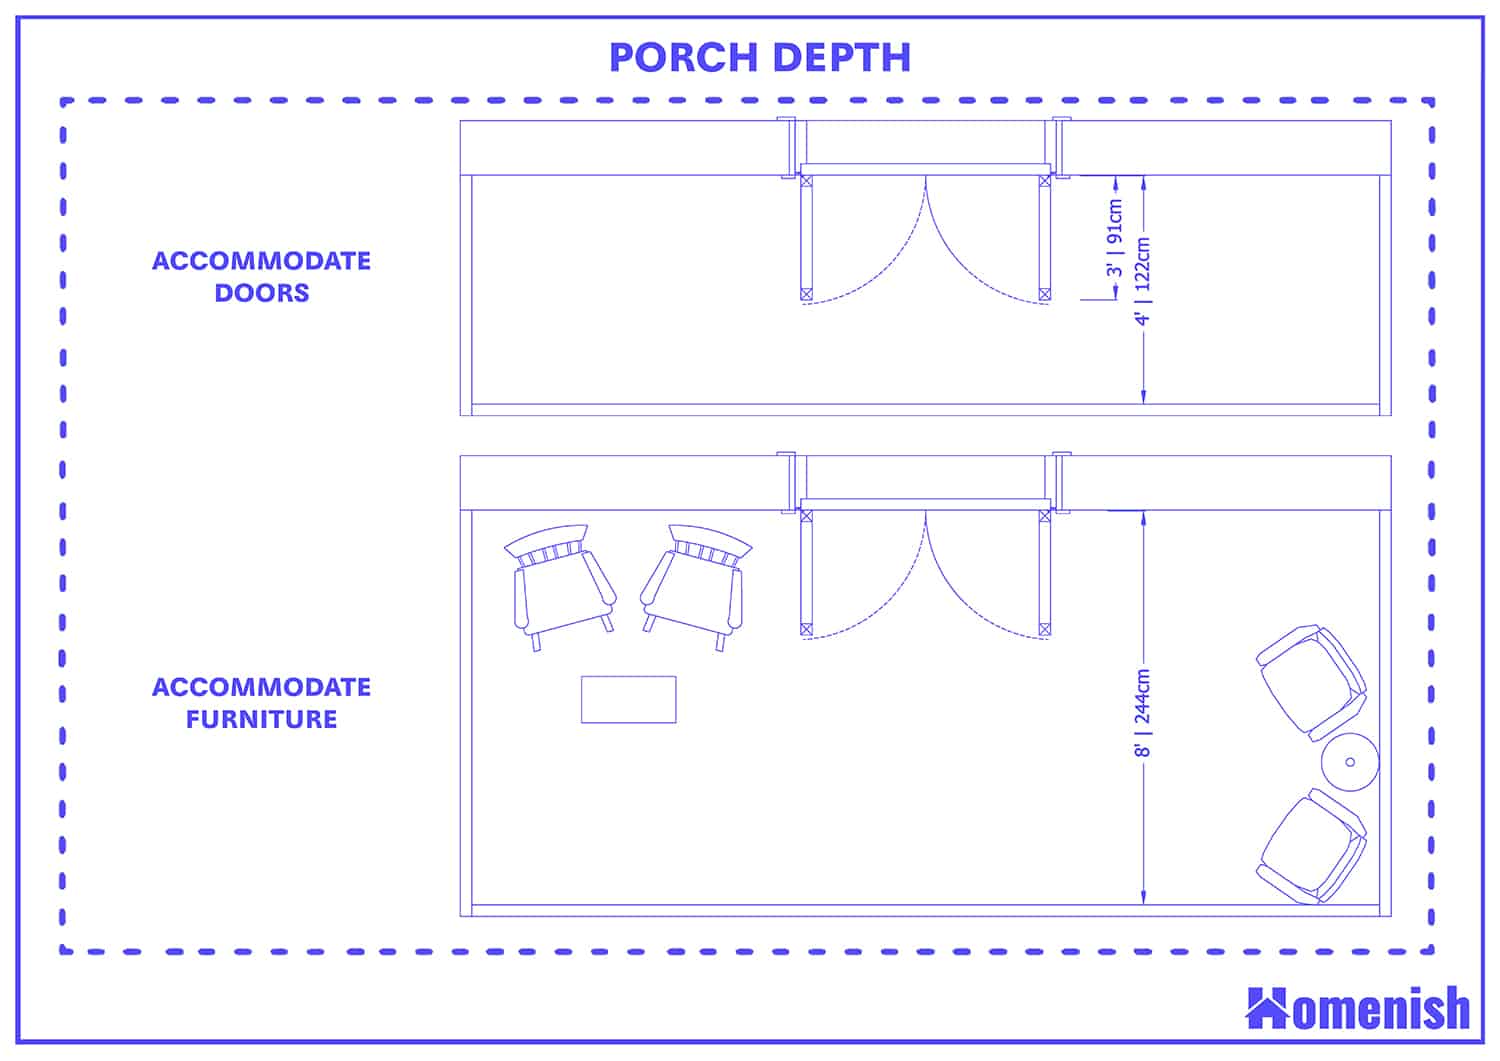 Porch Depth